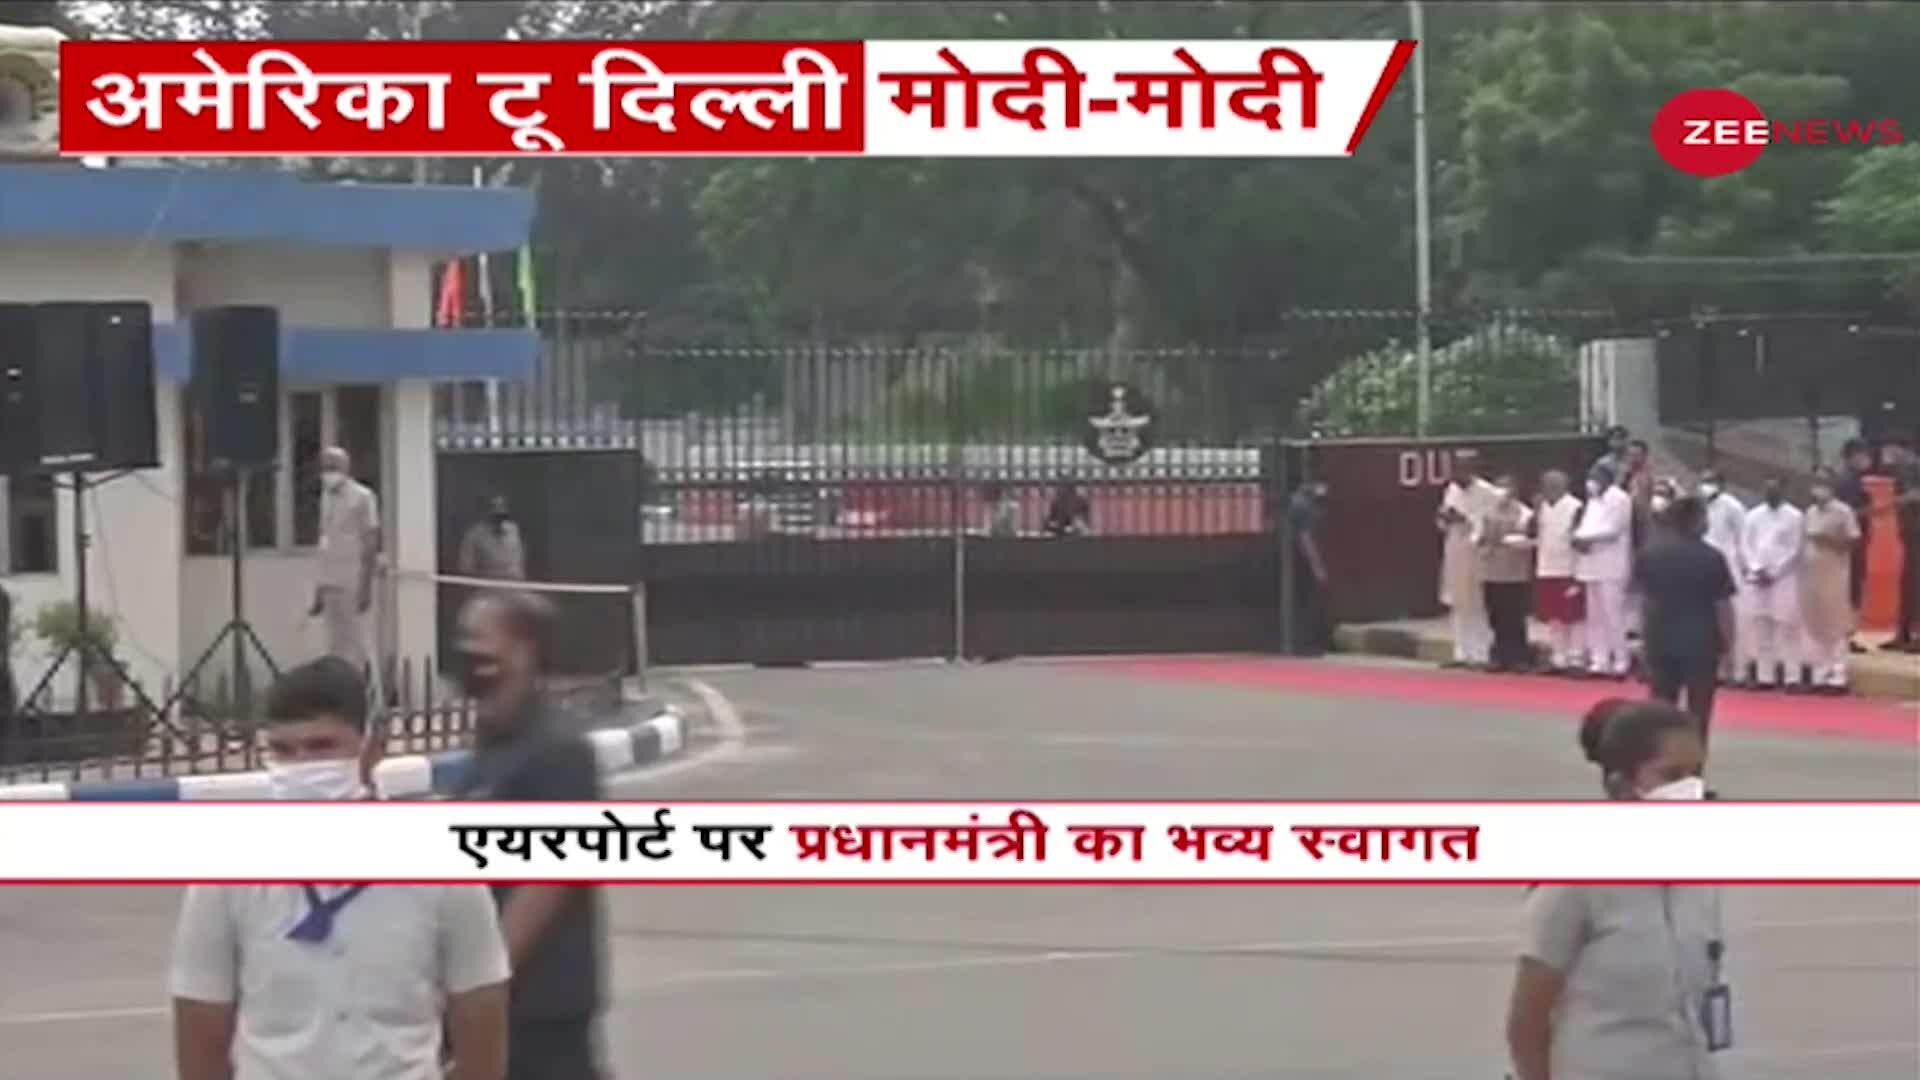 4 दिन के अमेरिकी दौरे से लौट रहे PM Modi, Palam Airport पर PM के स्वागत की तैयारी